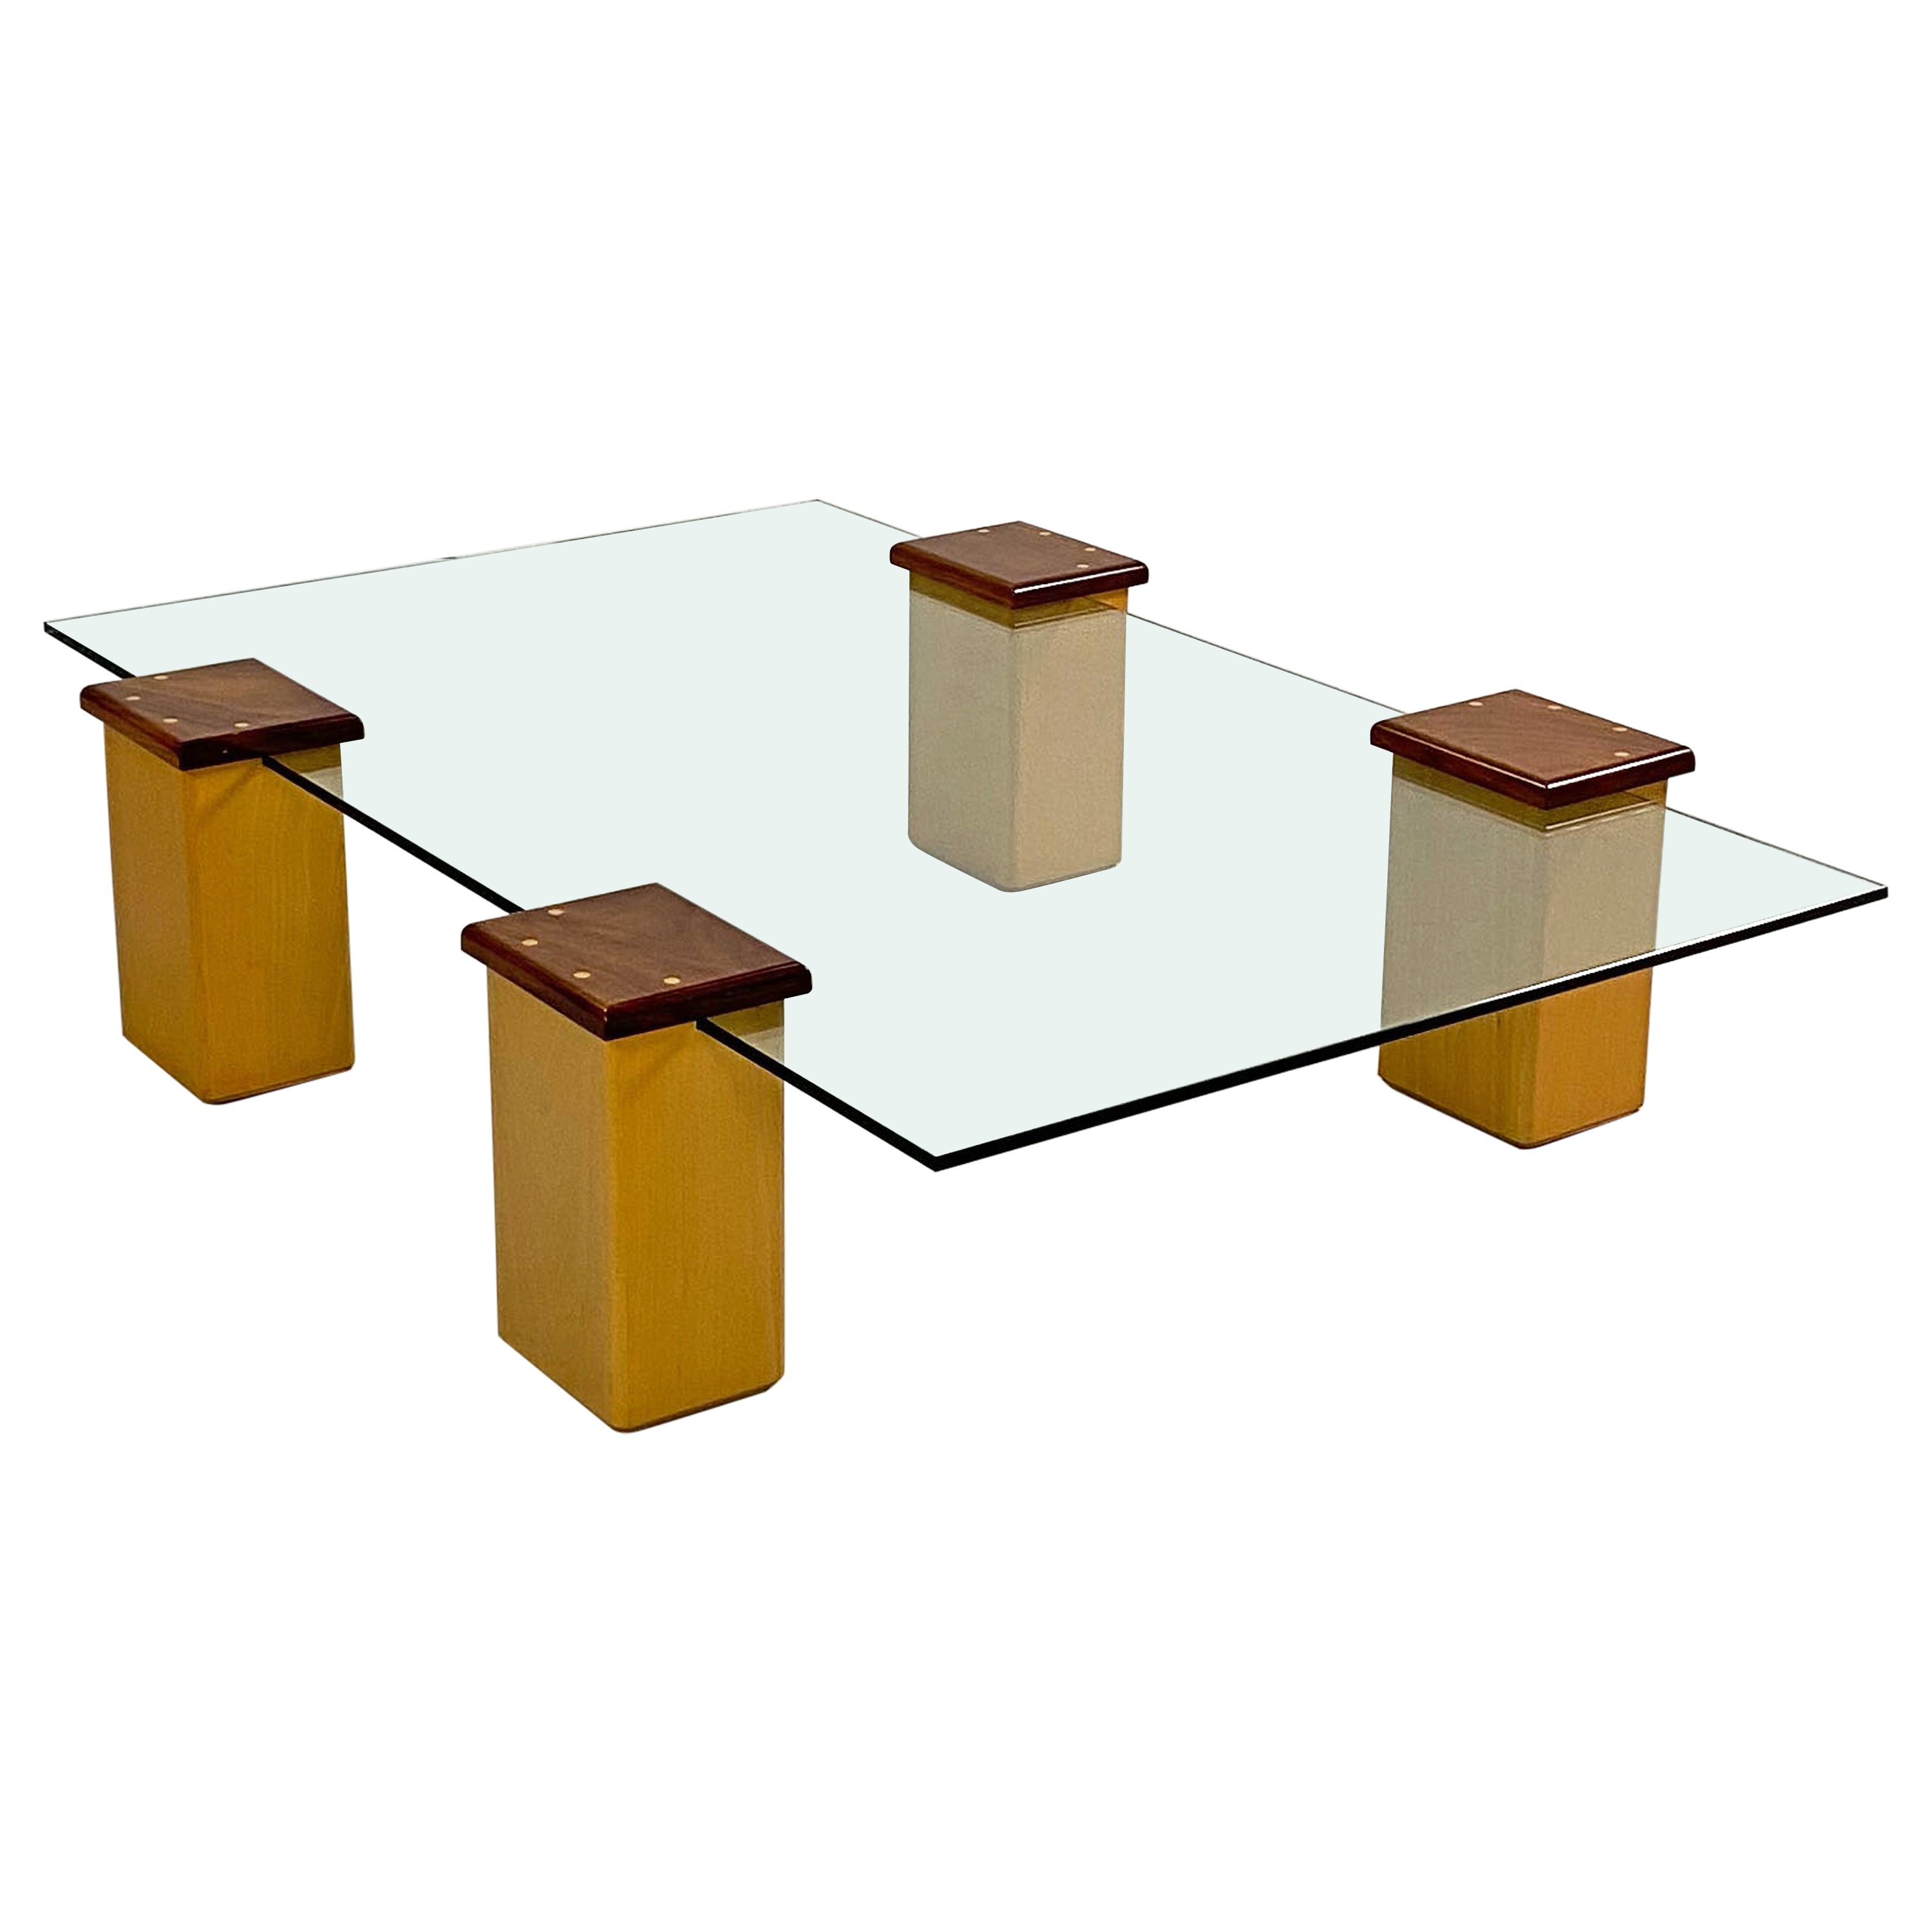 Maßgefertigter postmoderner Couchtisch. Ein übliches Design, das aus 4 Buchensäulen mit Kirschholzplatten besteht, die auf die Glastischplatte aufgesteckt werden können und so eine Vielzahl von Konfigurationen ermöglichen.
 